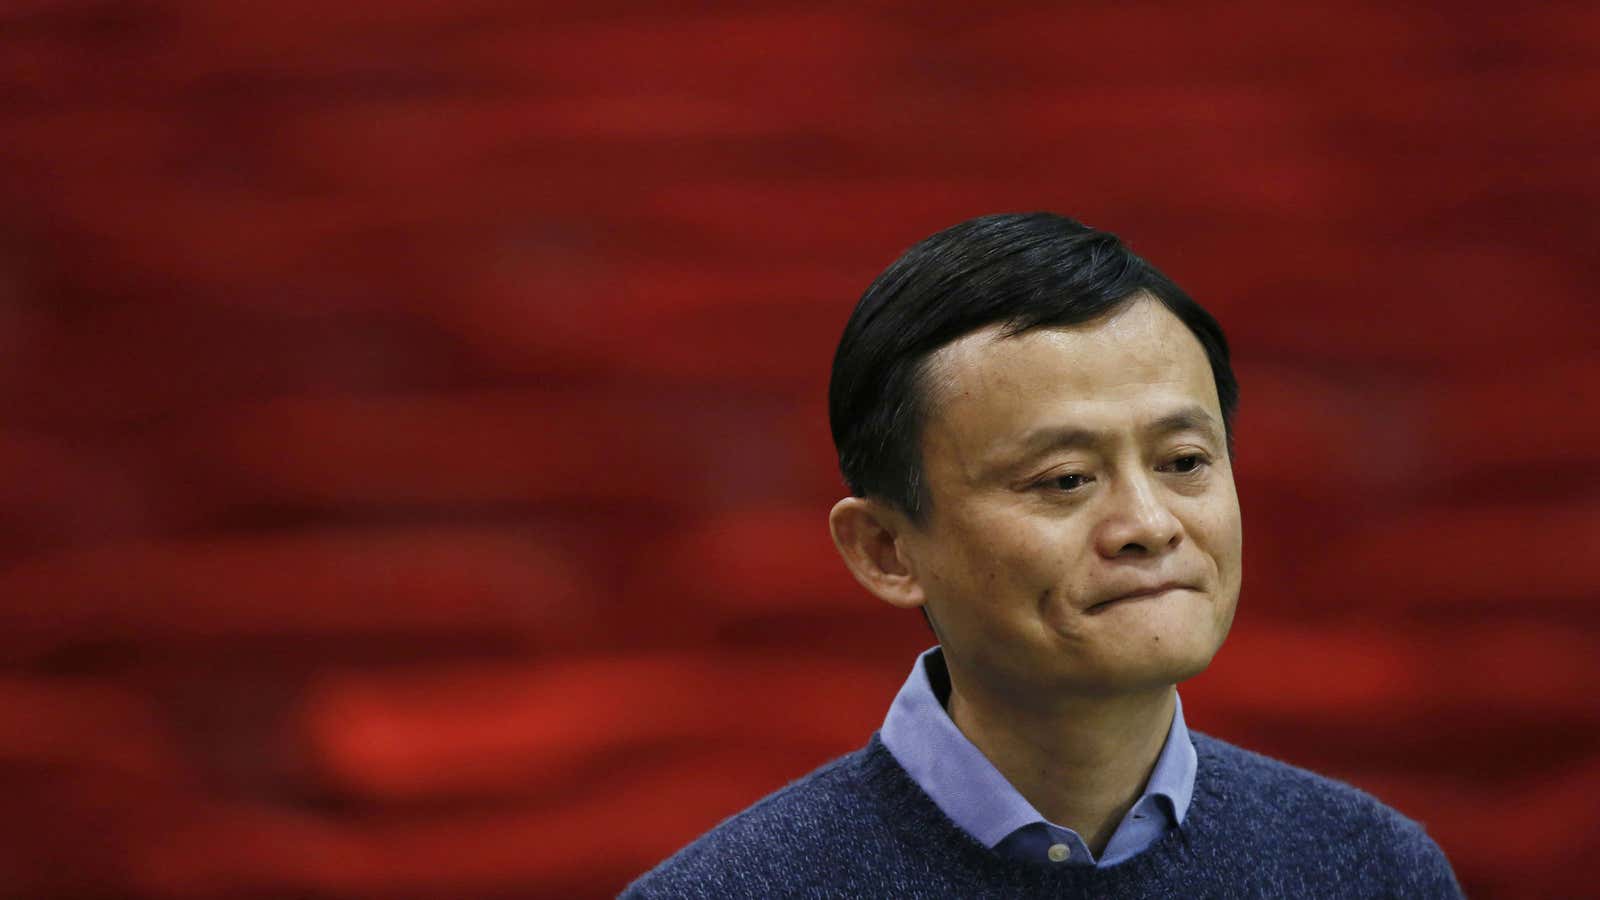 Jack Ma is unimpressed.